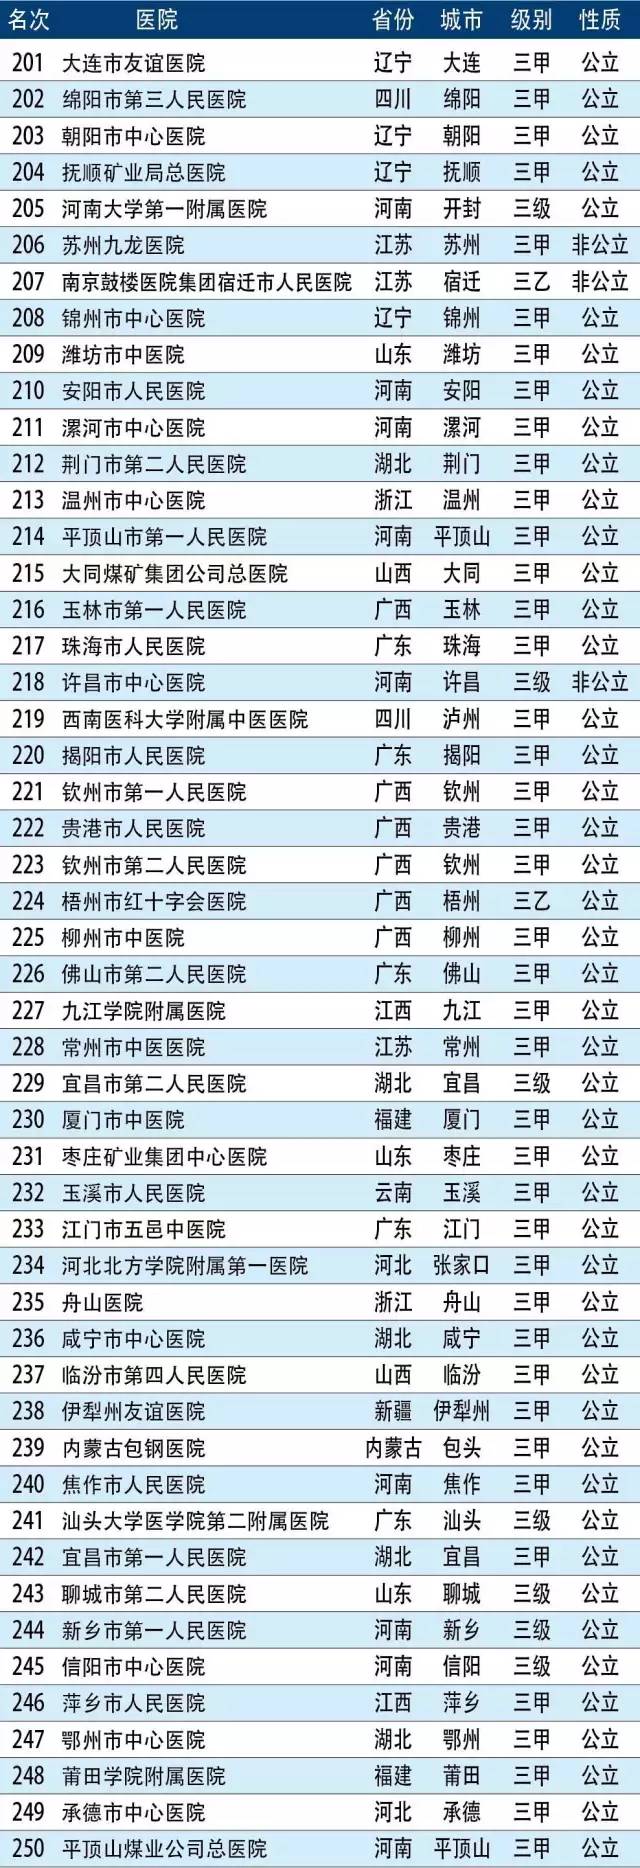 中国1700家医院最强排行榜:地级、县级、中医